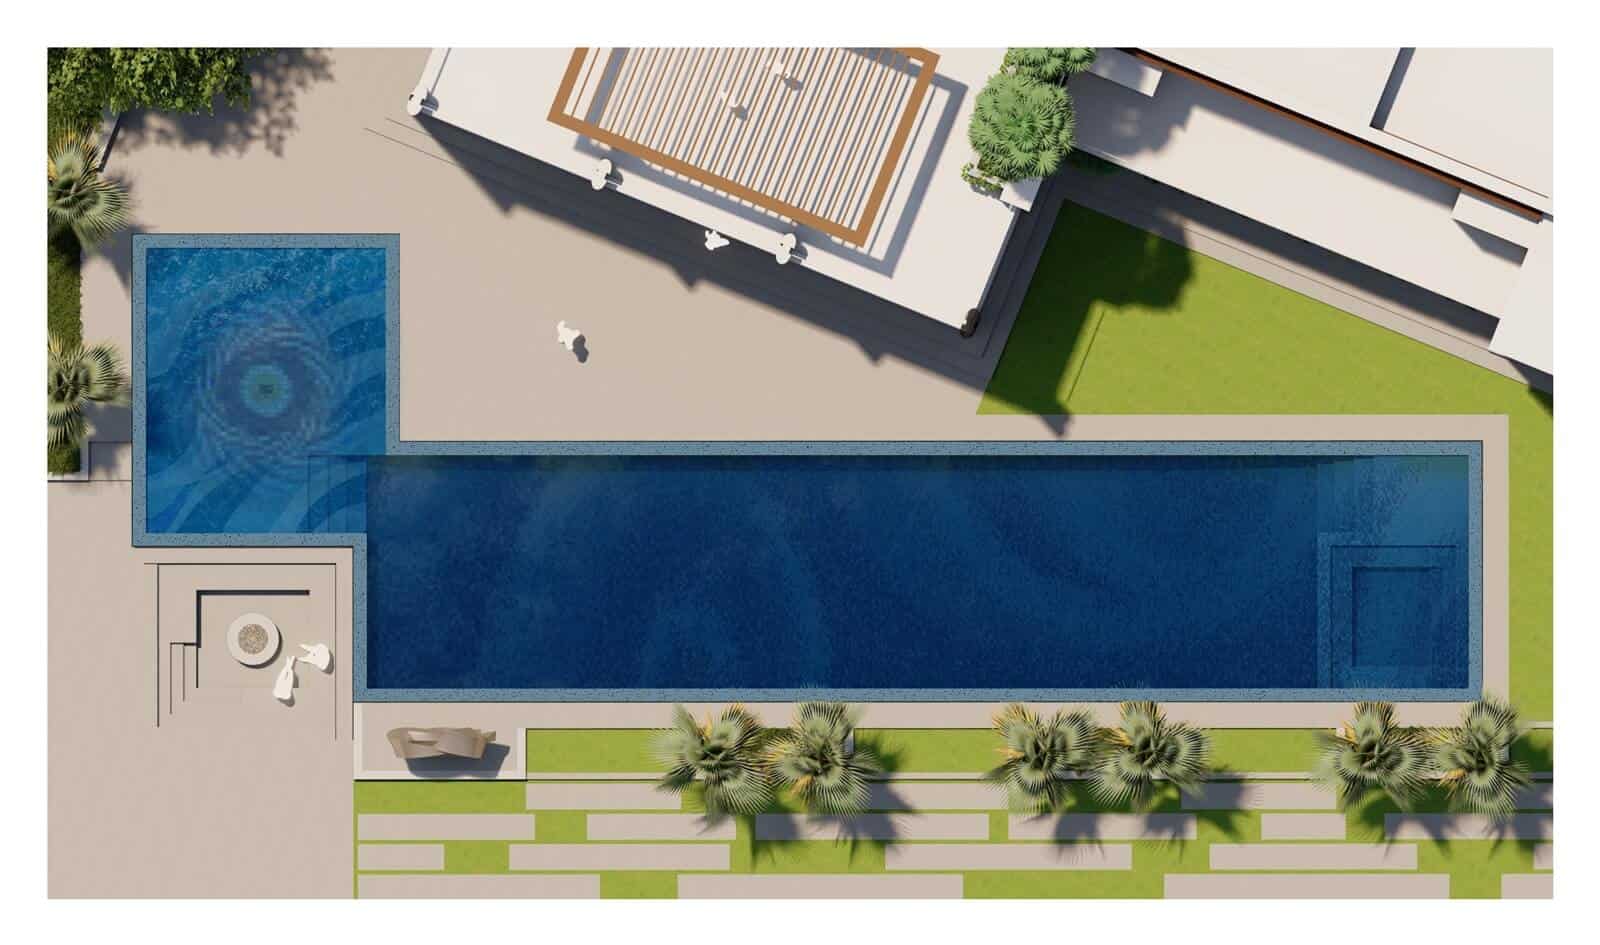 landscape architect pool mosaic design concept render